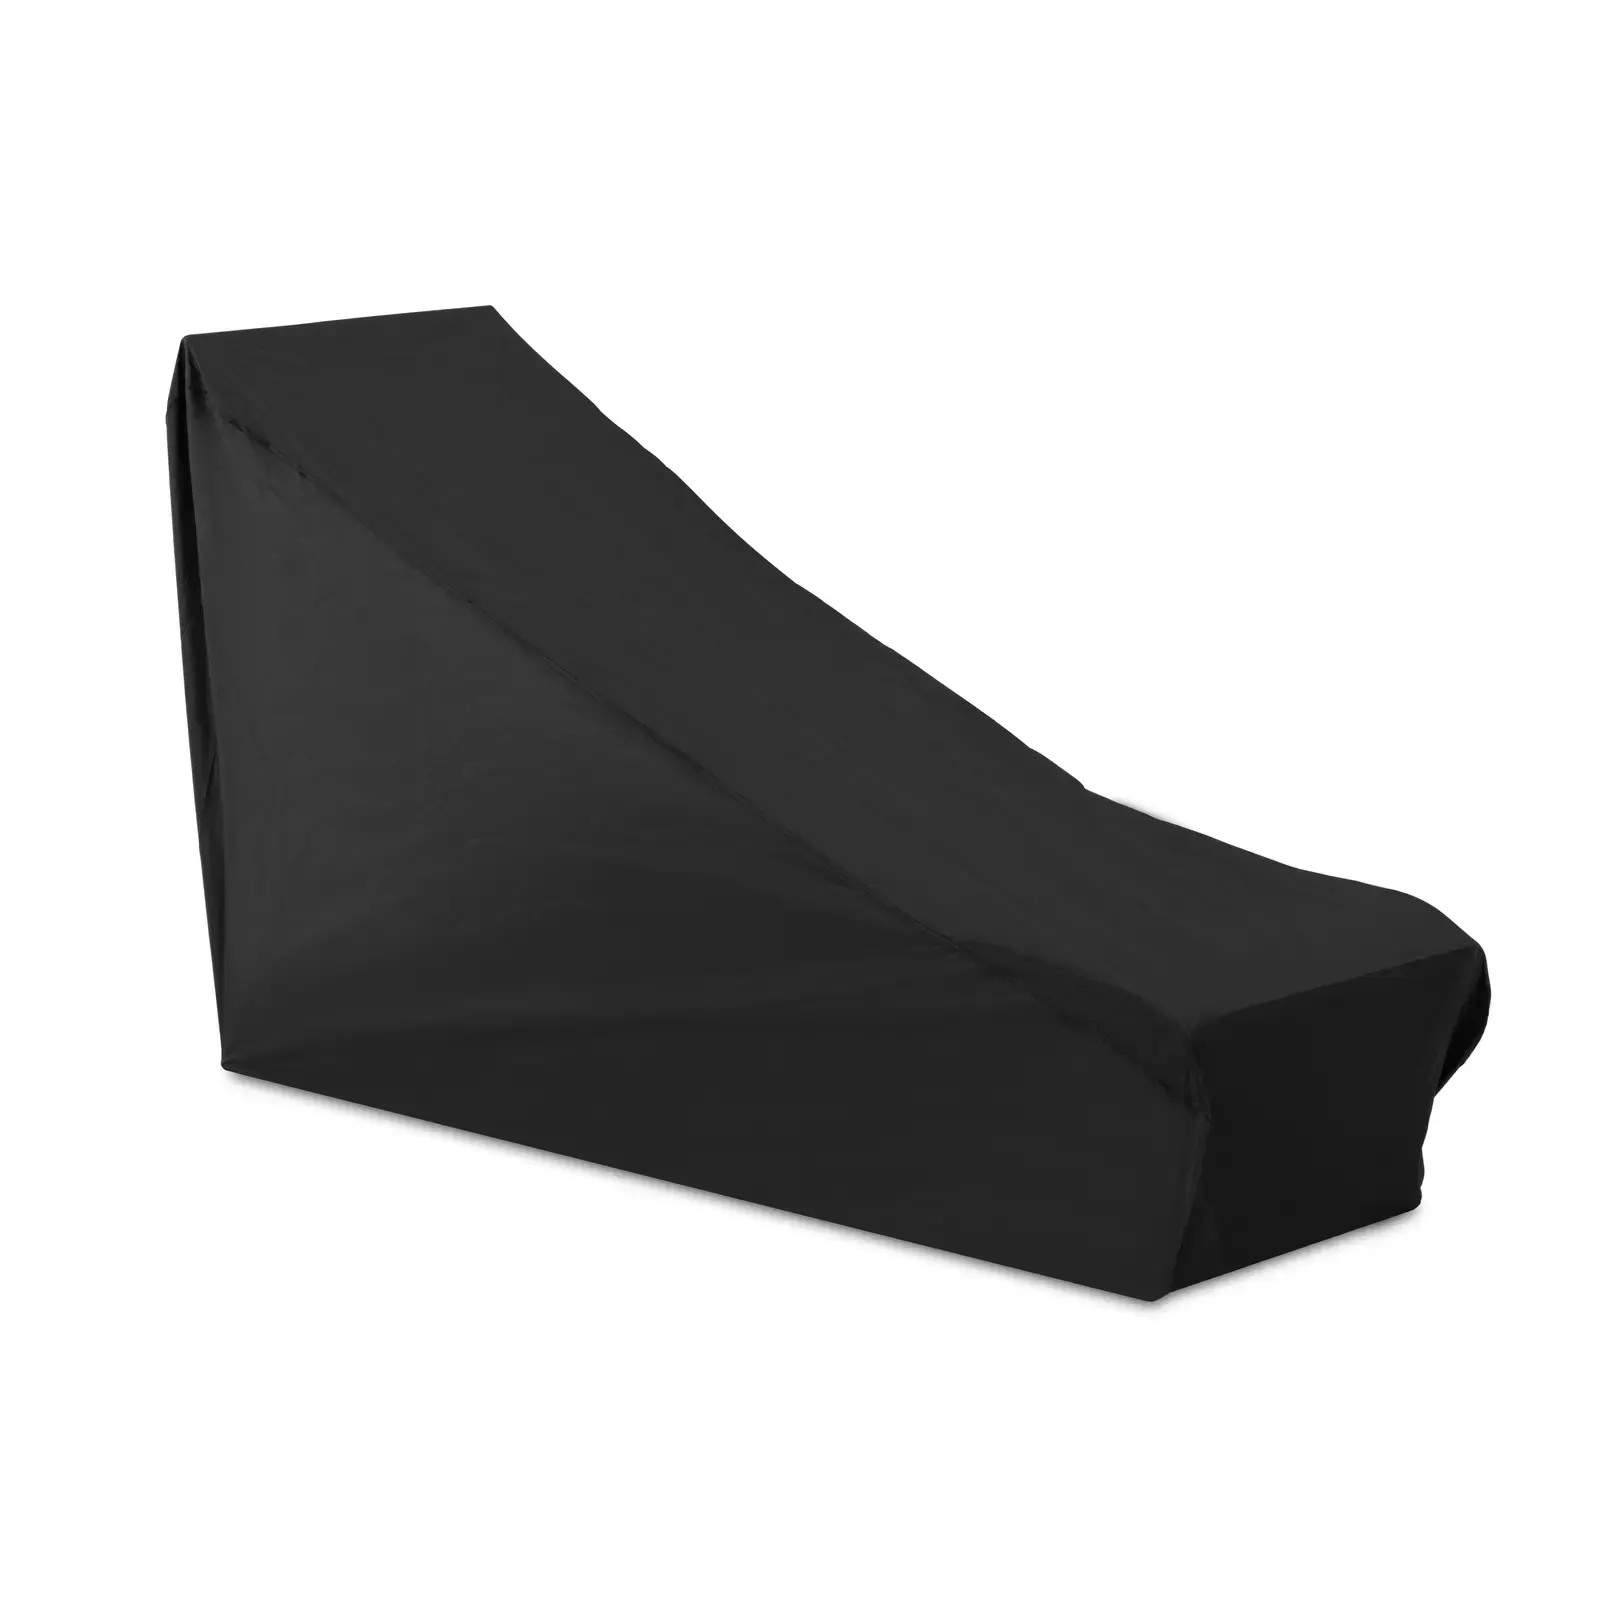 Uniprodo Beschermhoes ligstoel - voor 10250502, 10250503 en 10250504 en soortgelijke ligstoelen